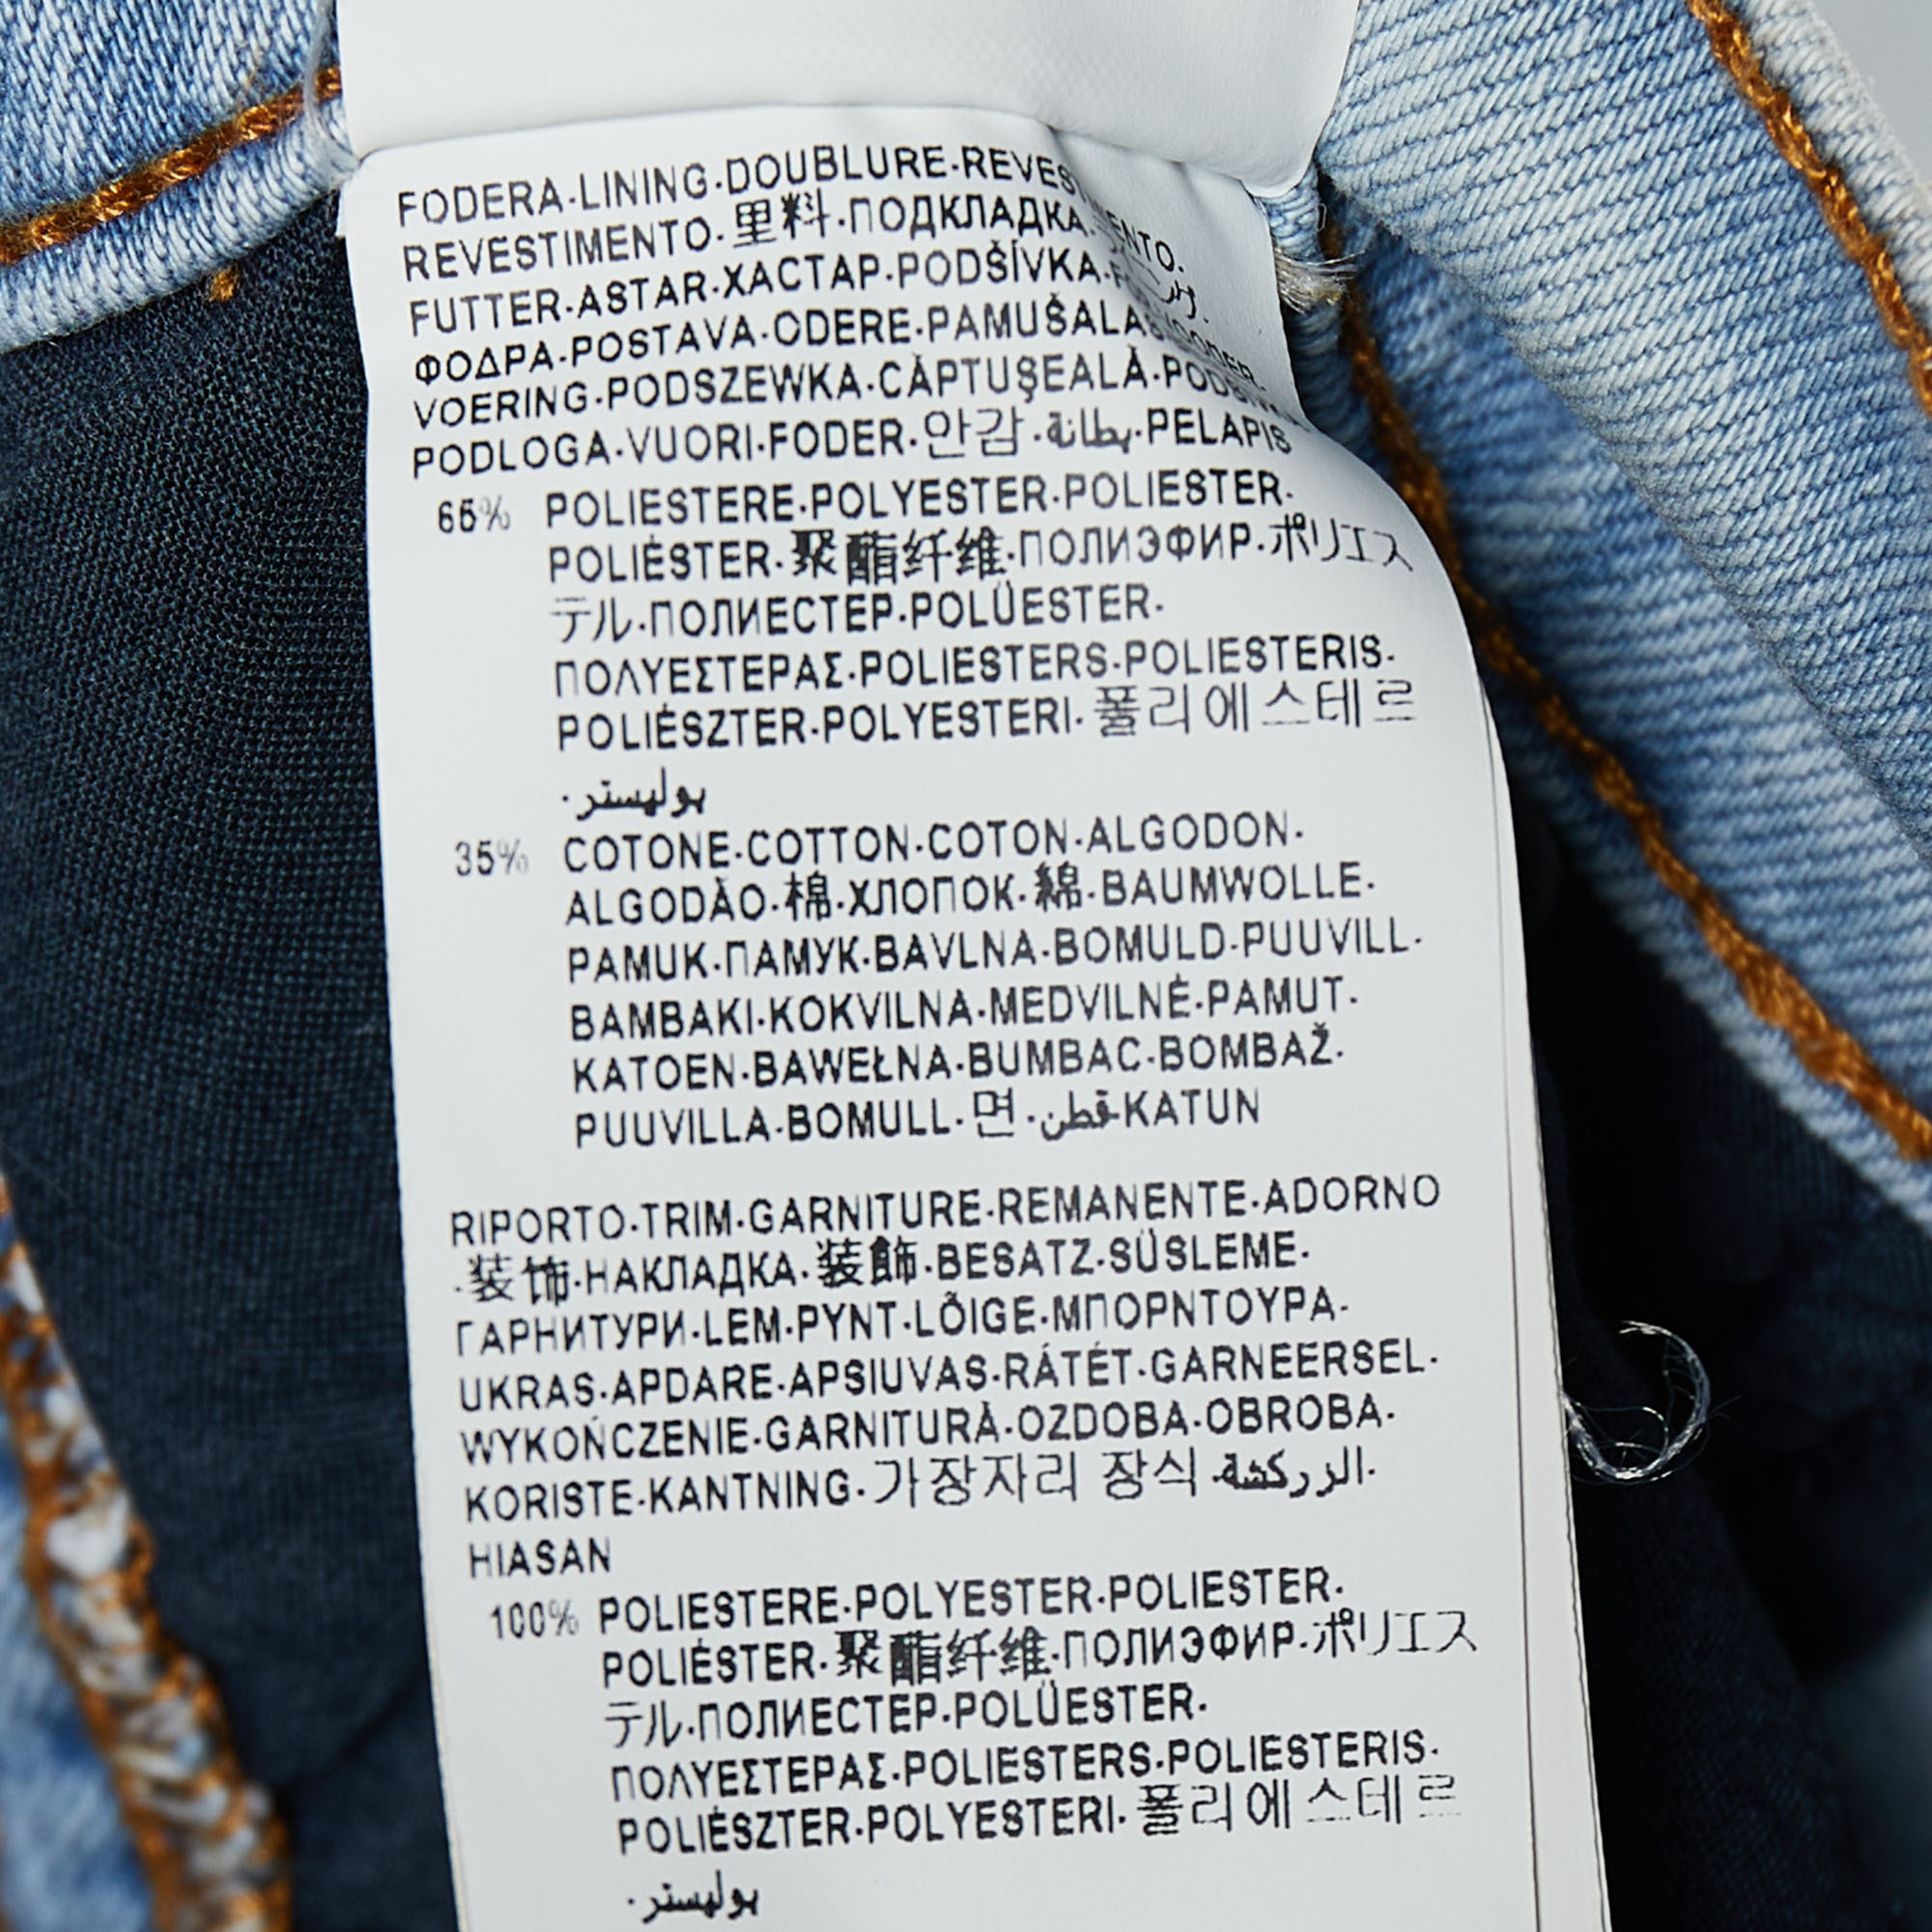 Versus Versace Blue Denim Logo Printed Side Strip Detail Slim Fit Jeans S Waist 28